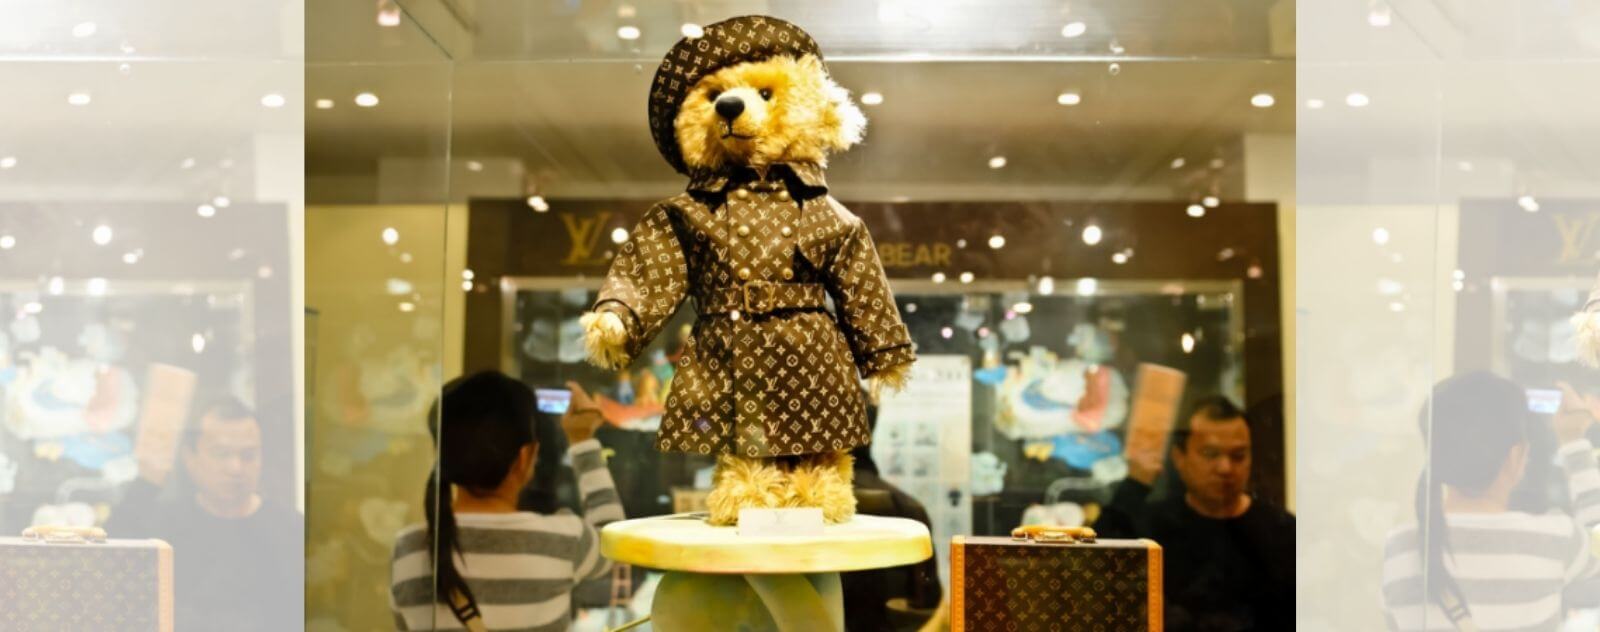 L'Ours en Peluche le Plus Cher du Monde Steiff Louis Vuitton Vendu à Presque 2 Millions d'Euros